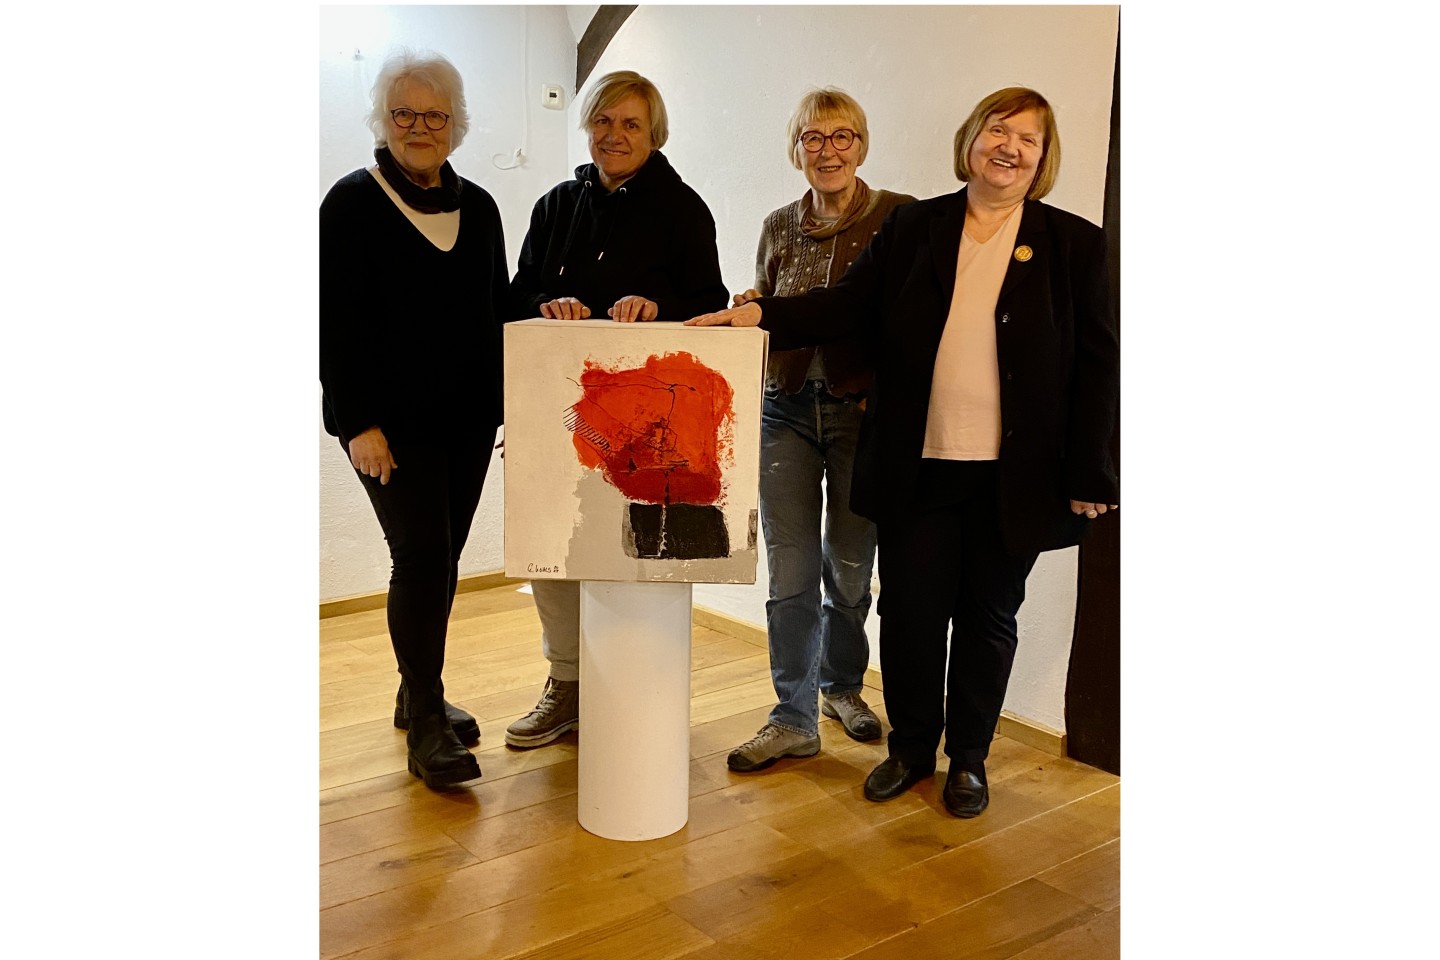 Das Foto zeigt von links: Erika Kohls, Martina Weskamp-Dittmann, Angelika Haneball und Cornelia Appel mit einer Gemeinschaftsarbeit des Teams. Ingrid Brödling fehlt auf dem Foto.